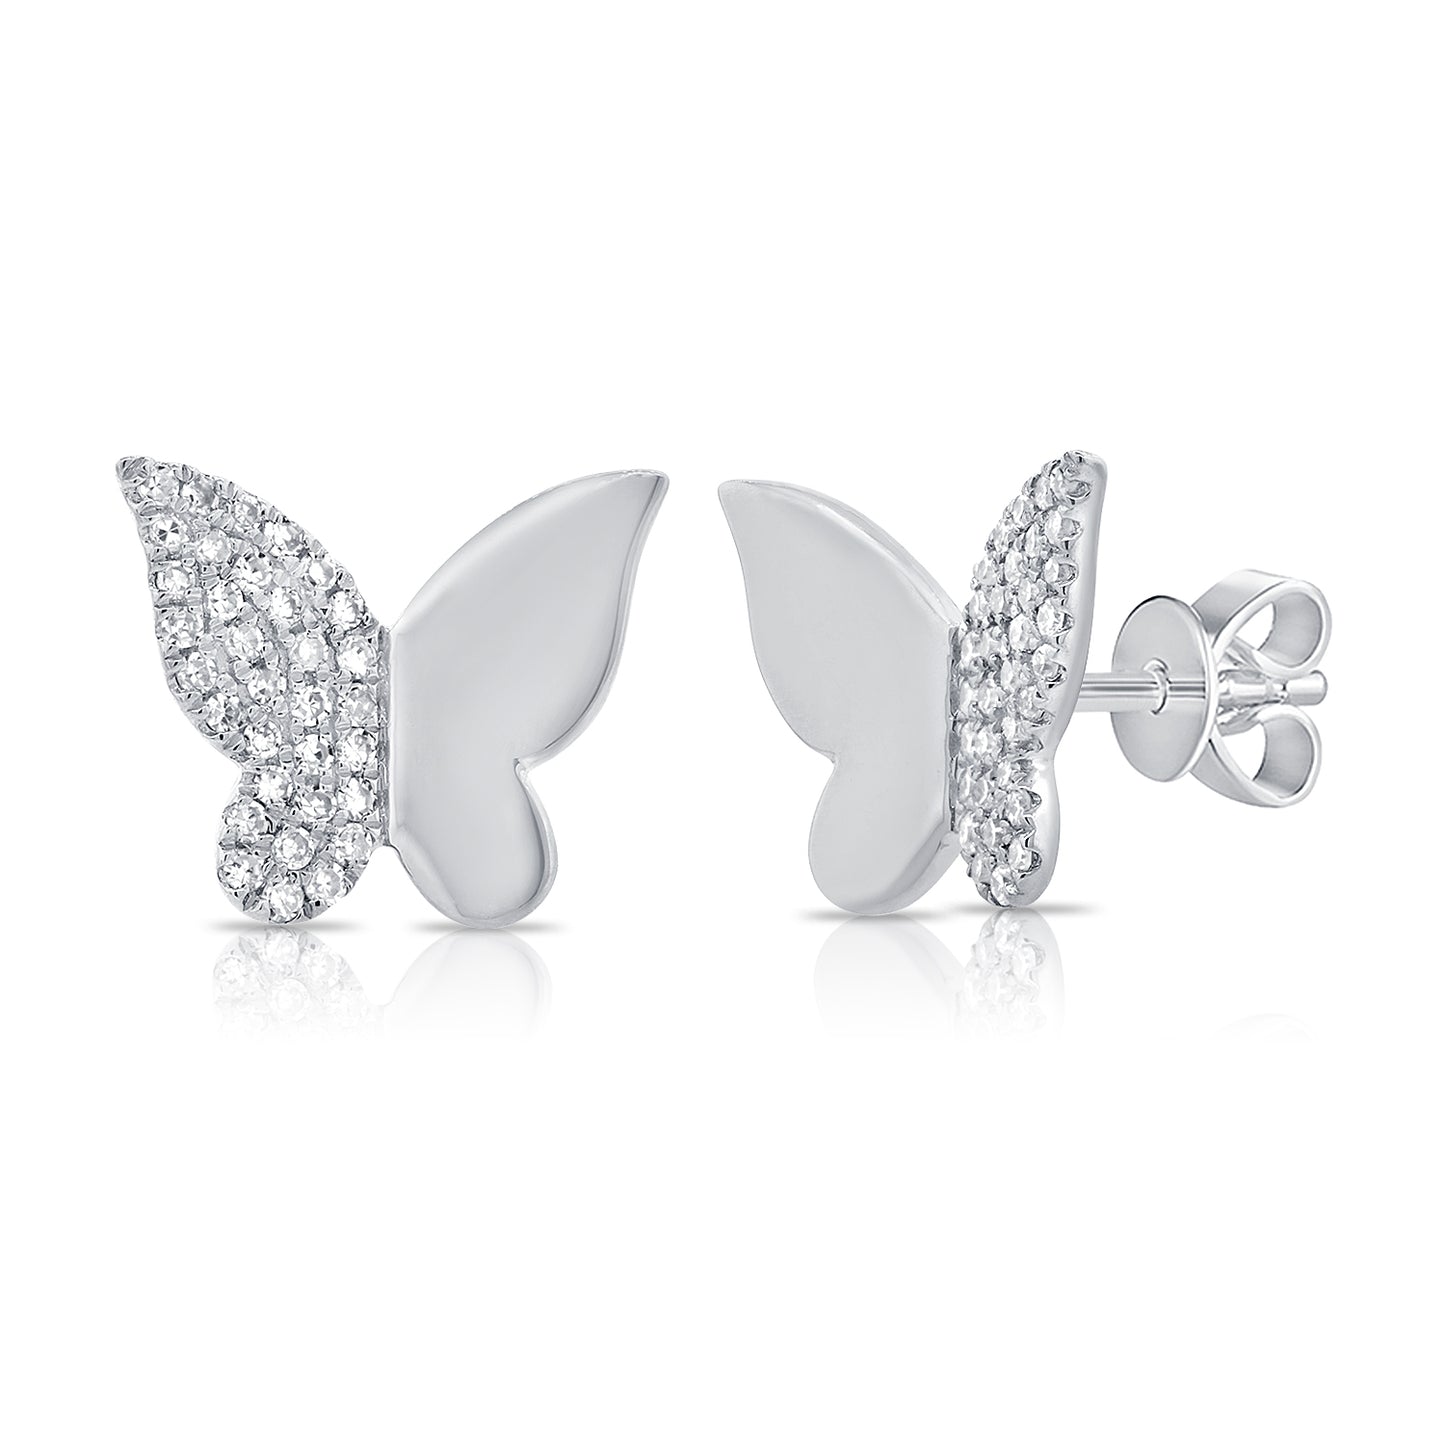 Half Gold Half Diamond Butterfly Earrings